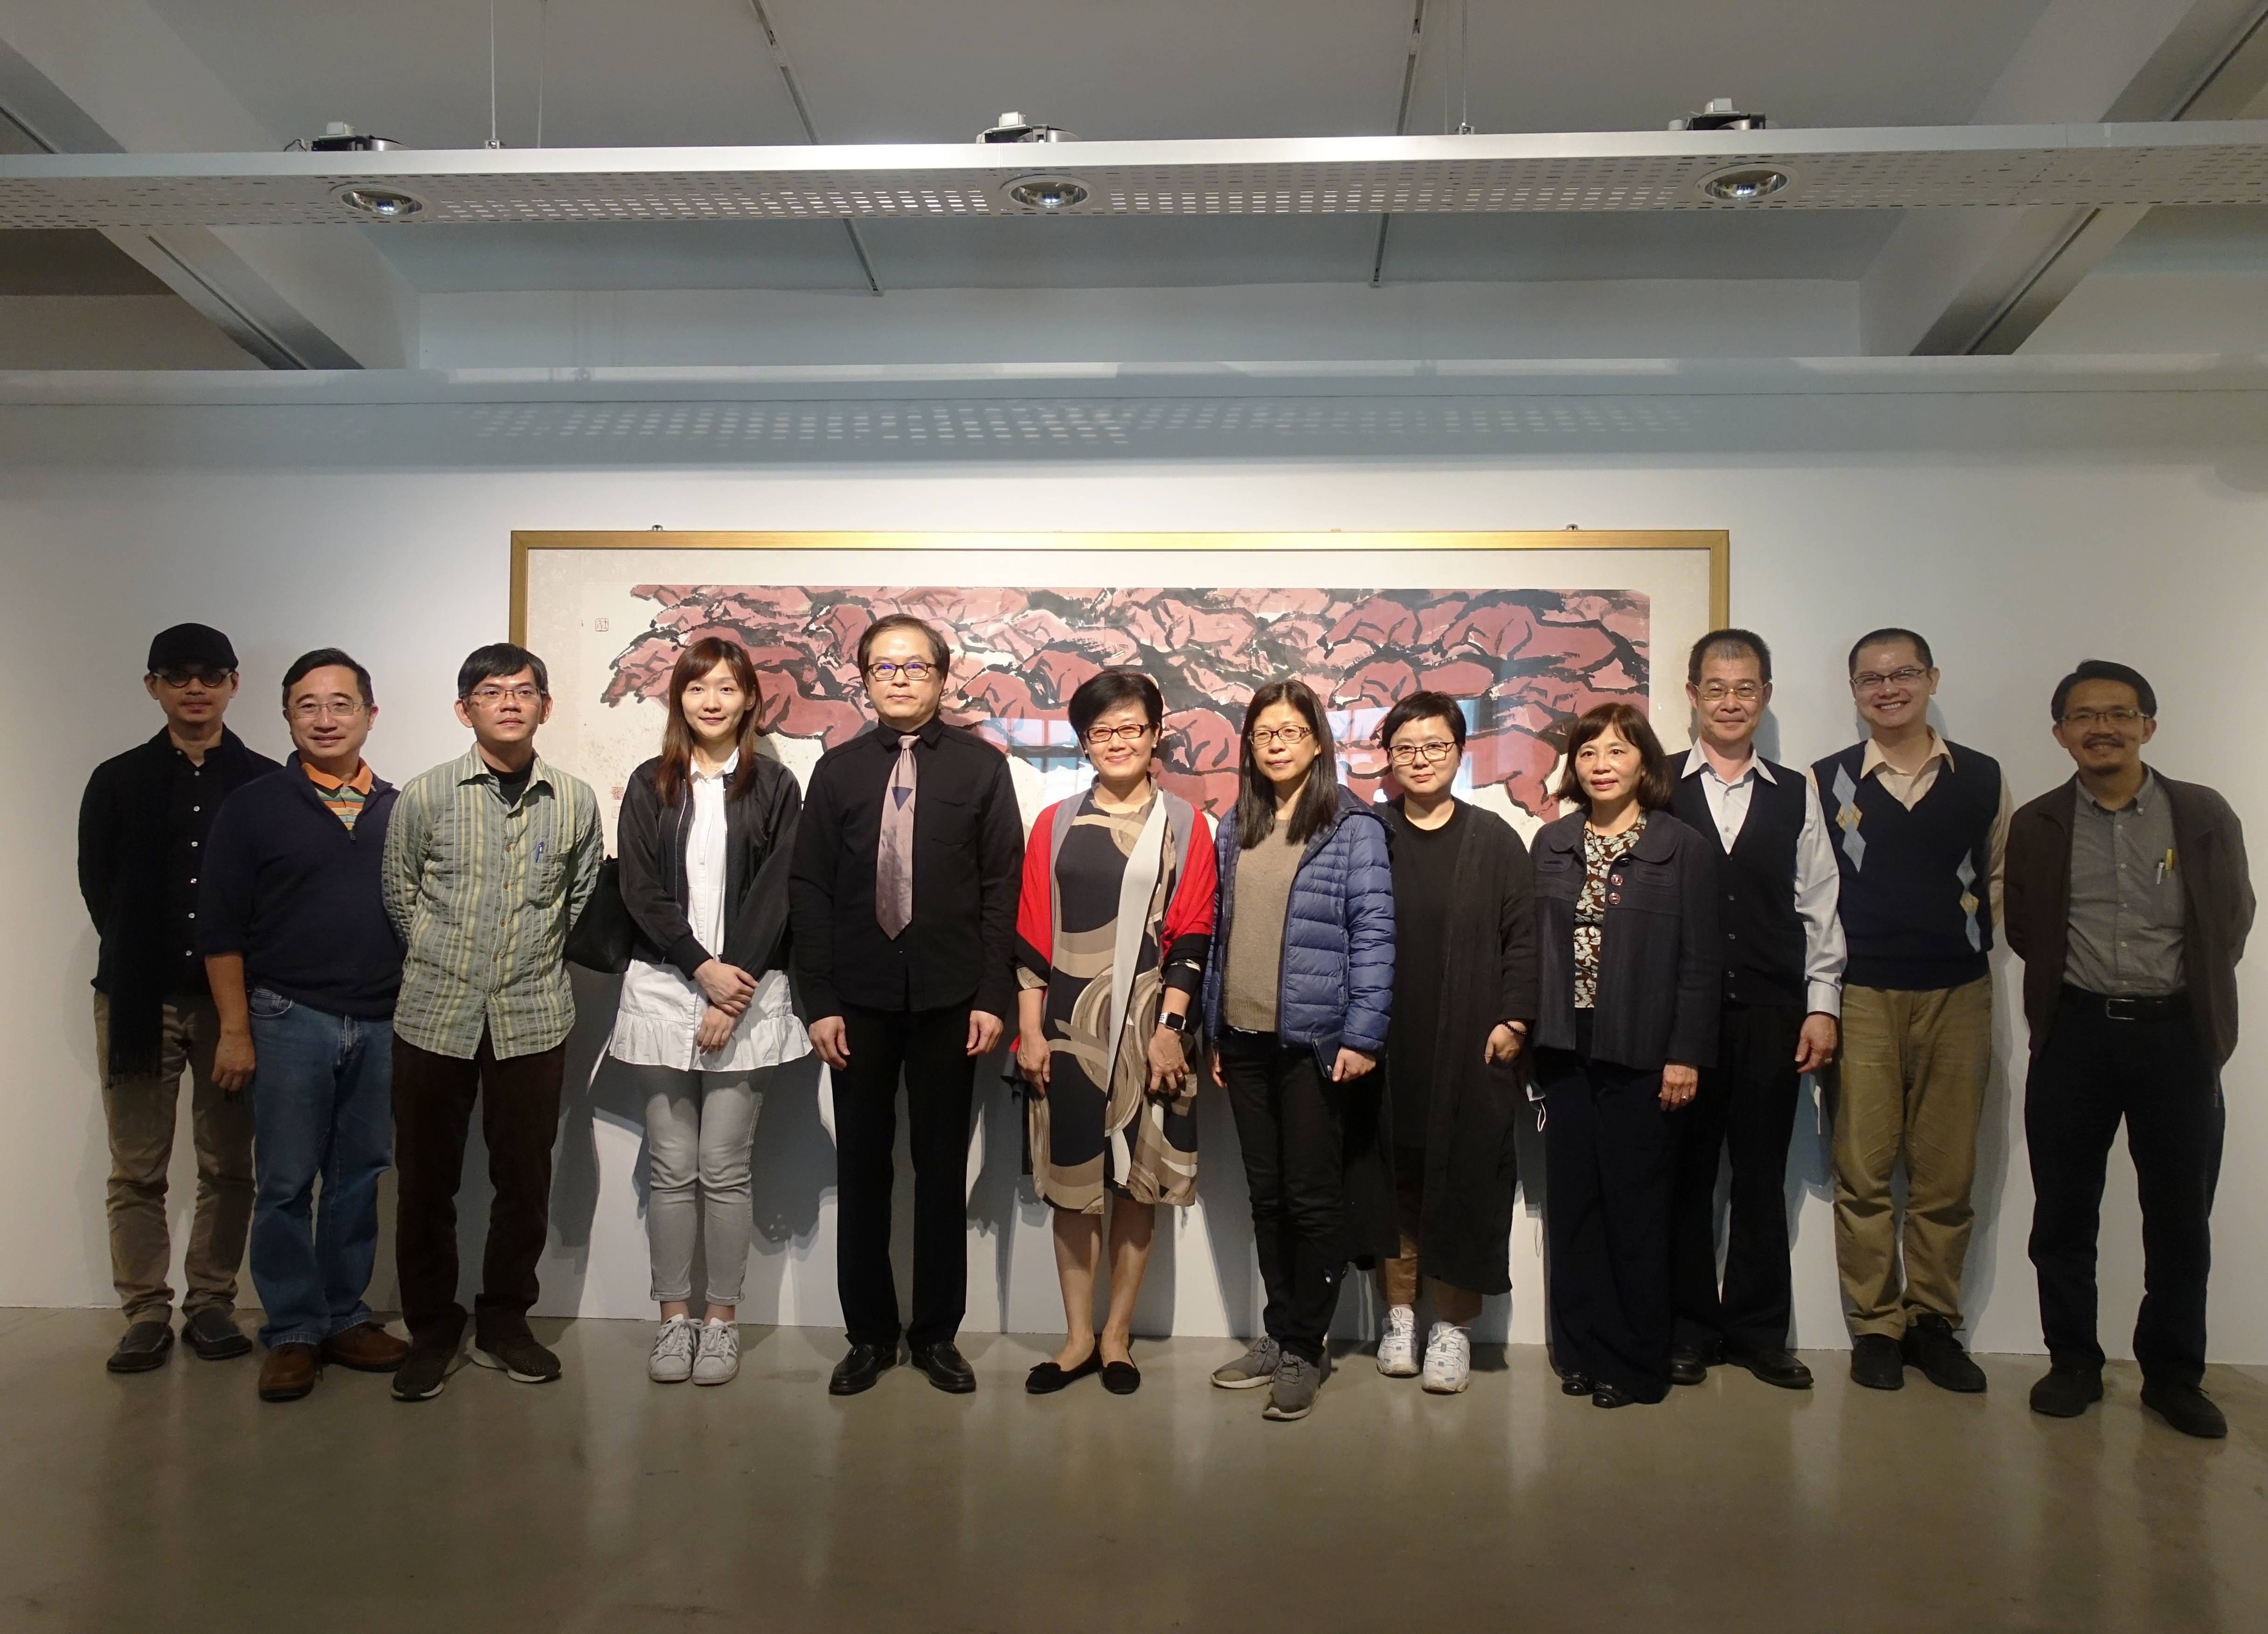 OUR ART藝術品競標義拍會揭幕式現場與會來賓與台藝大校長陳志誠先生合影。